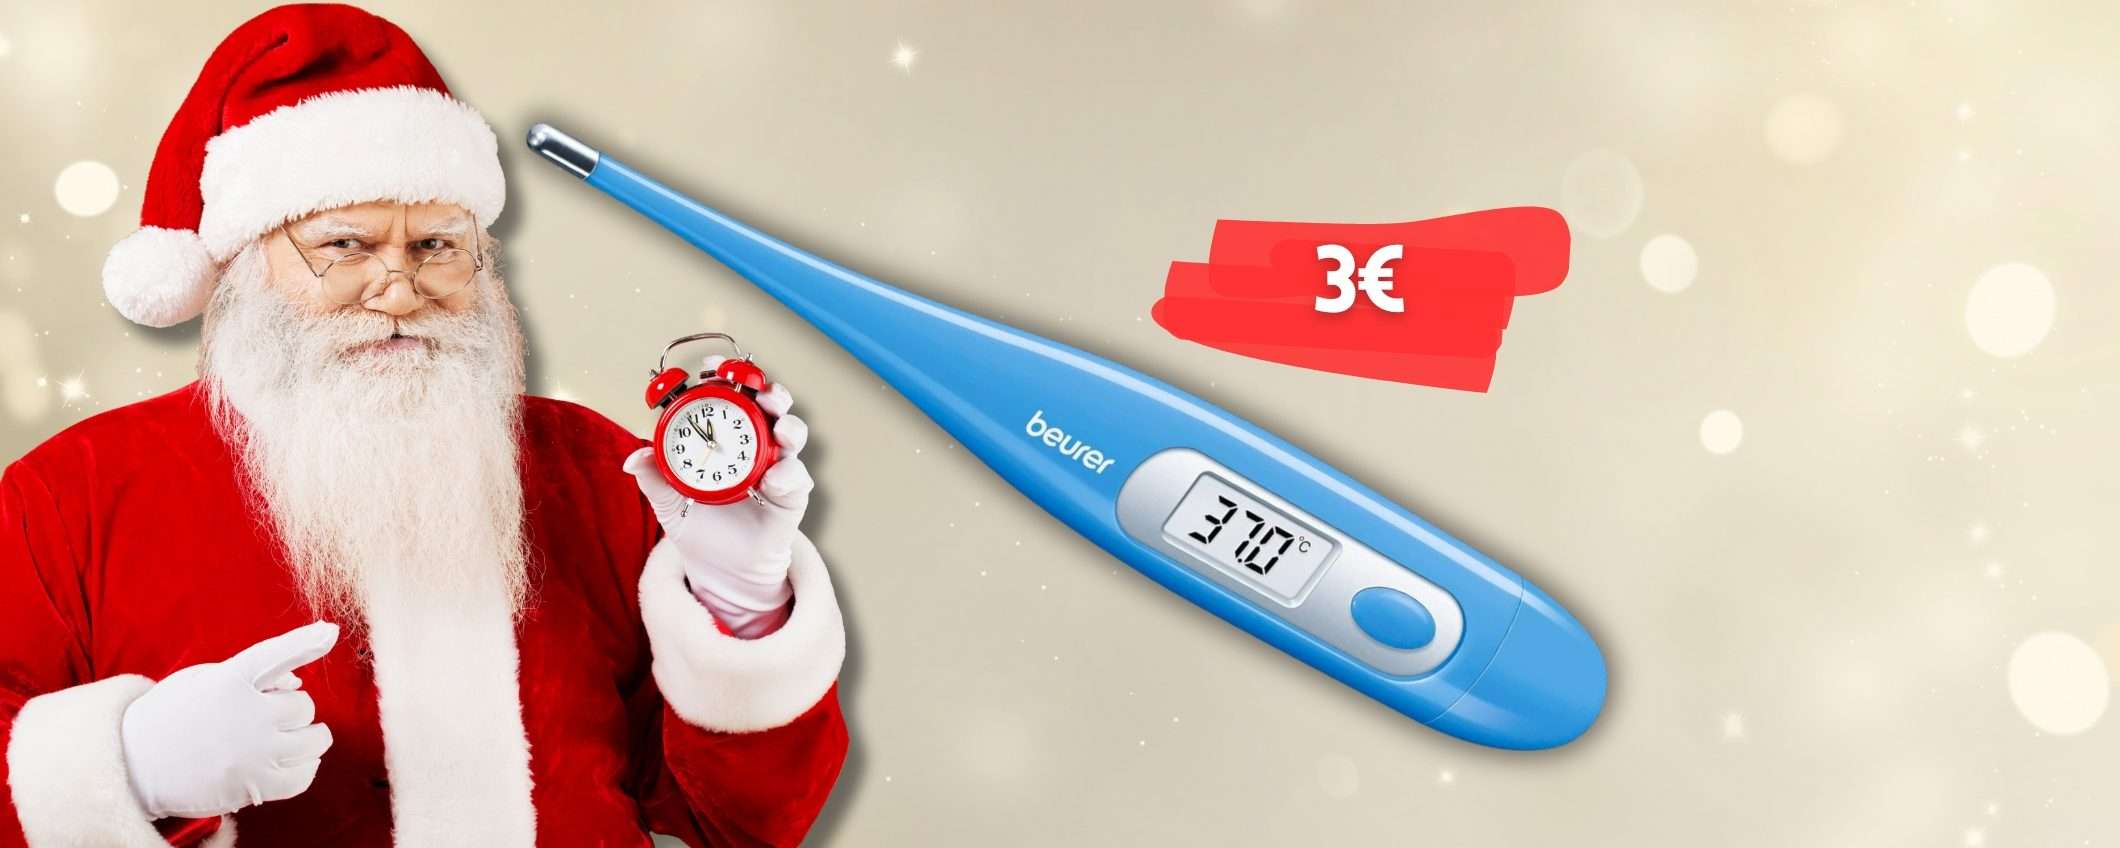 Termometro digitale Beurer a soli 3€ in sconto LAMPO: approfittane